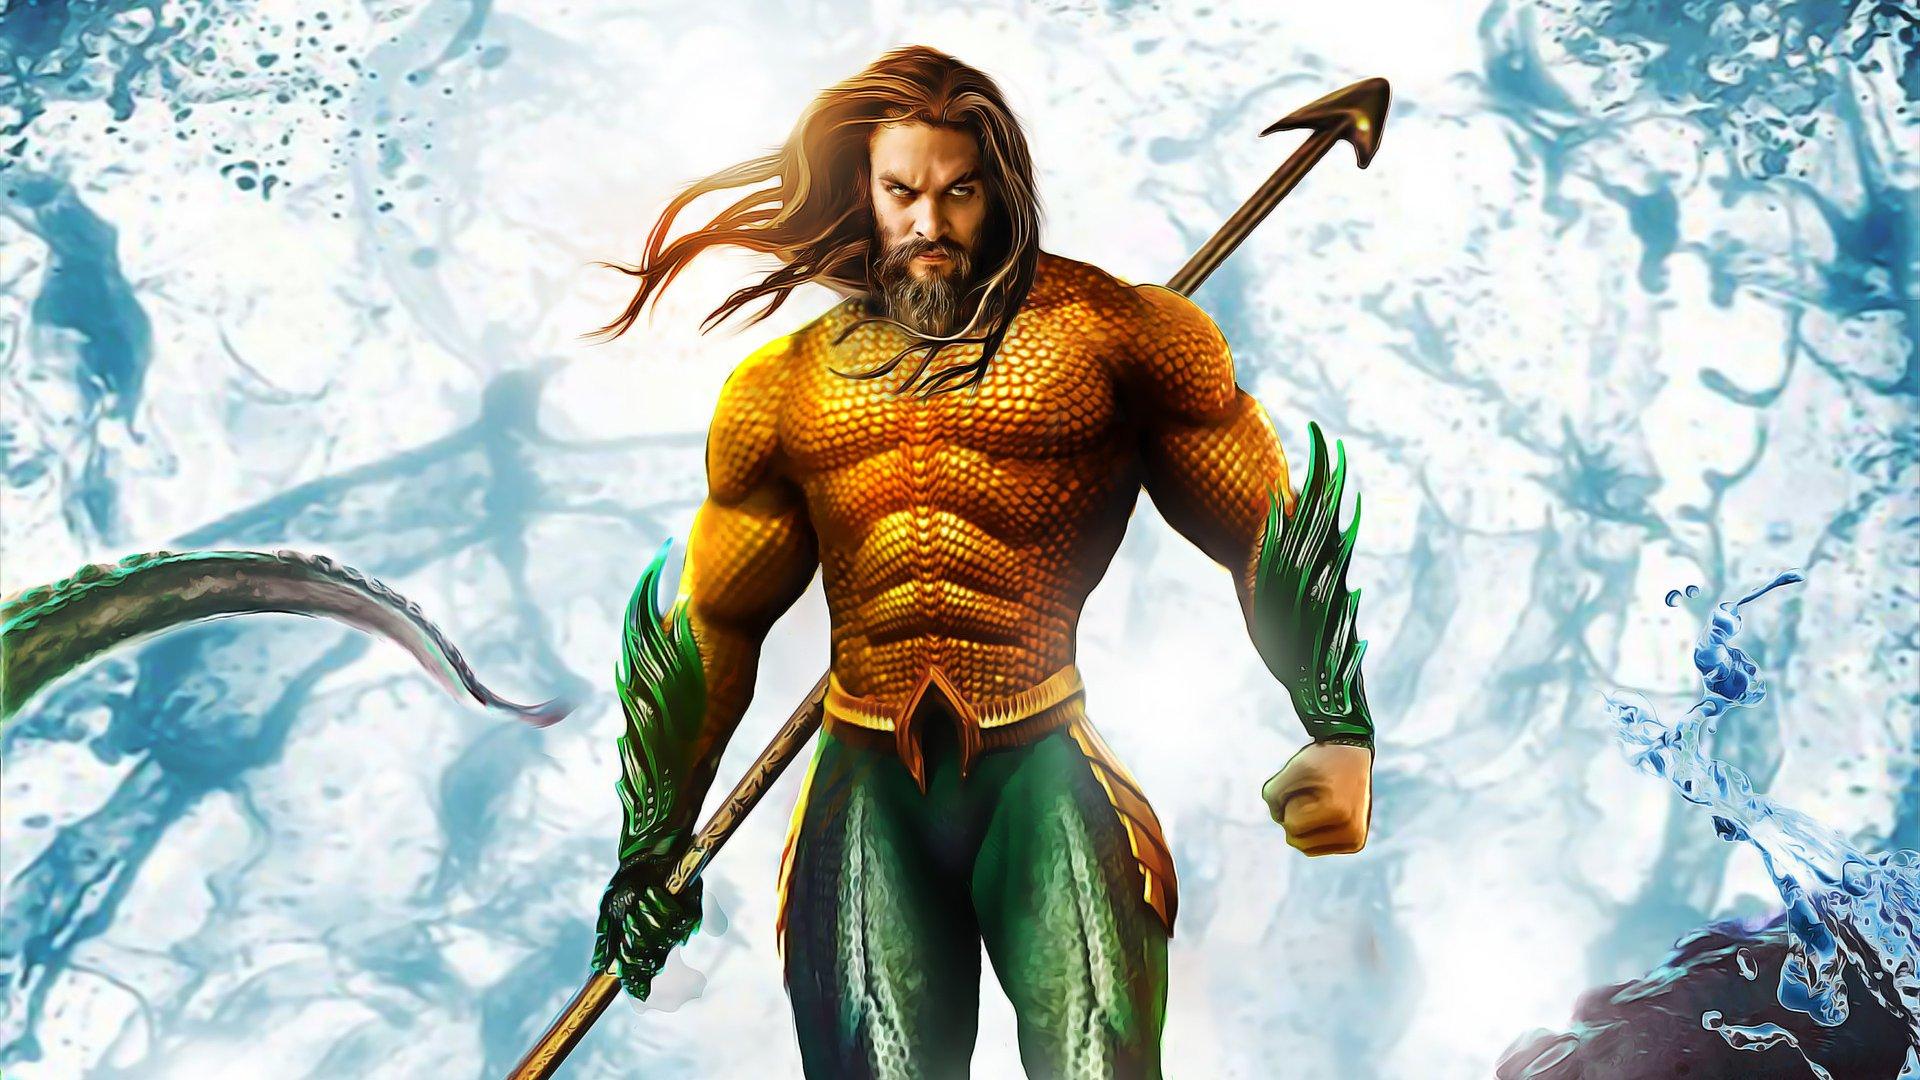 Movie Aquaman HD Wallpaper